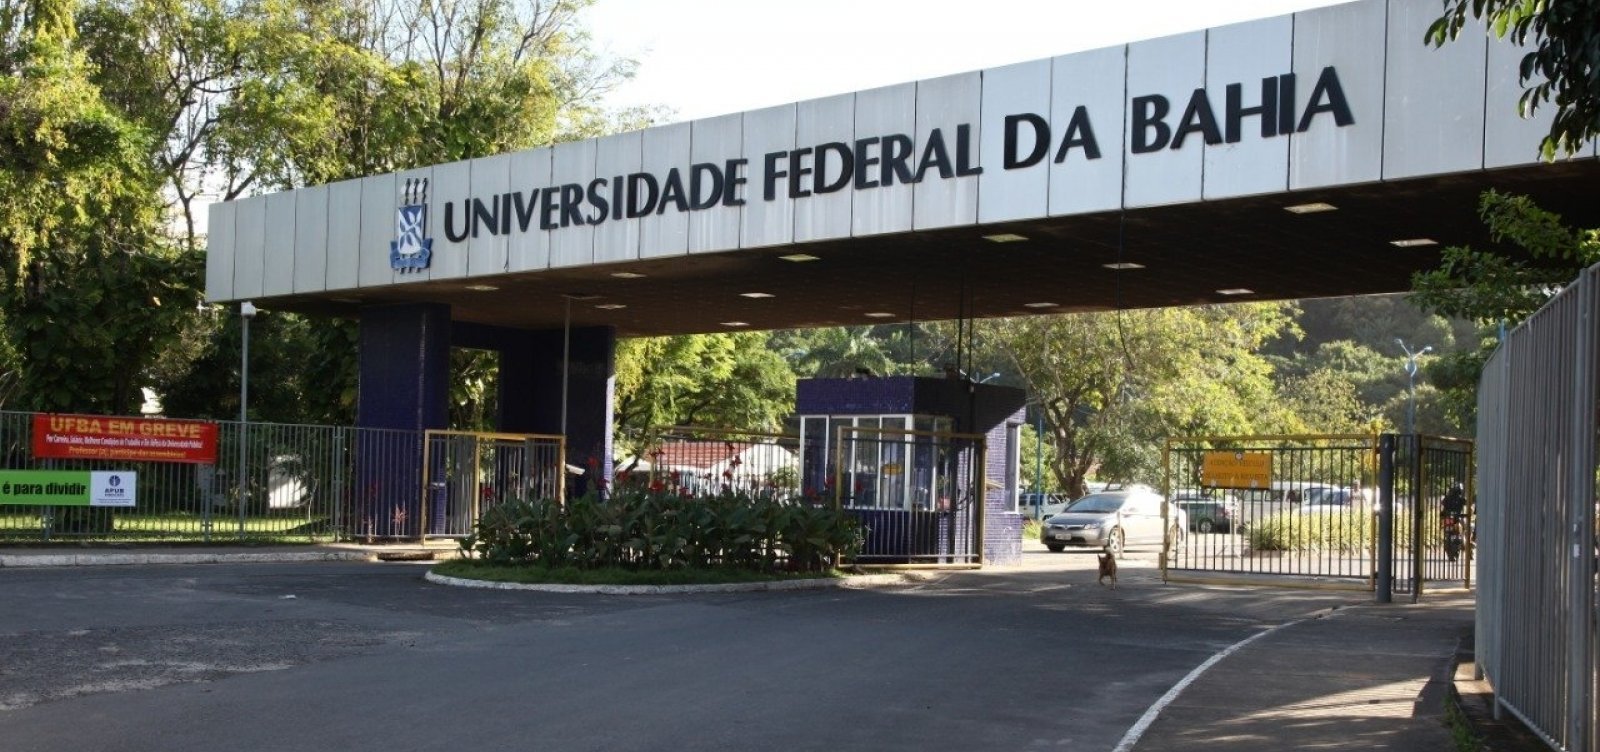 Ufba divulga edital com mais de 4 mil vagas, em cursos de graduação, que serão preenchidas pelo Sisu